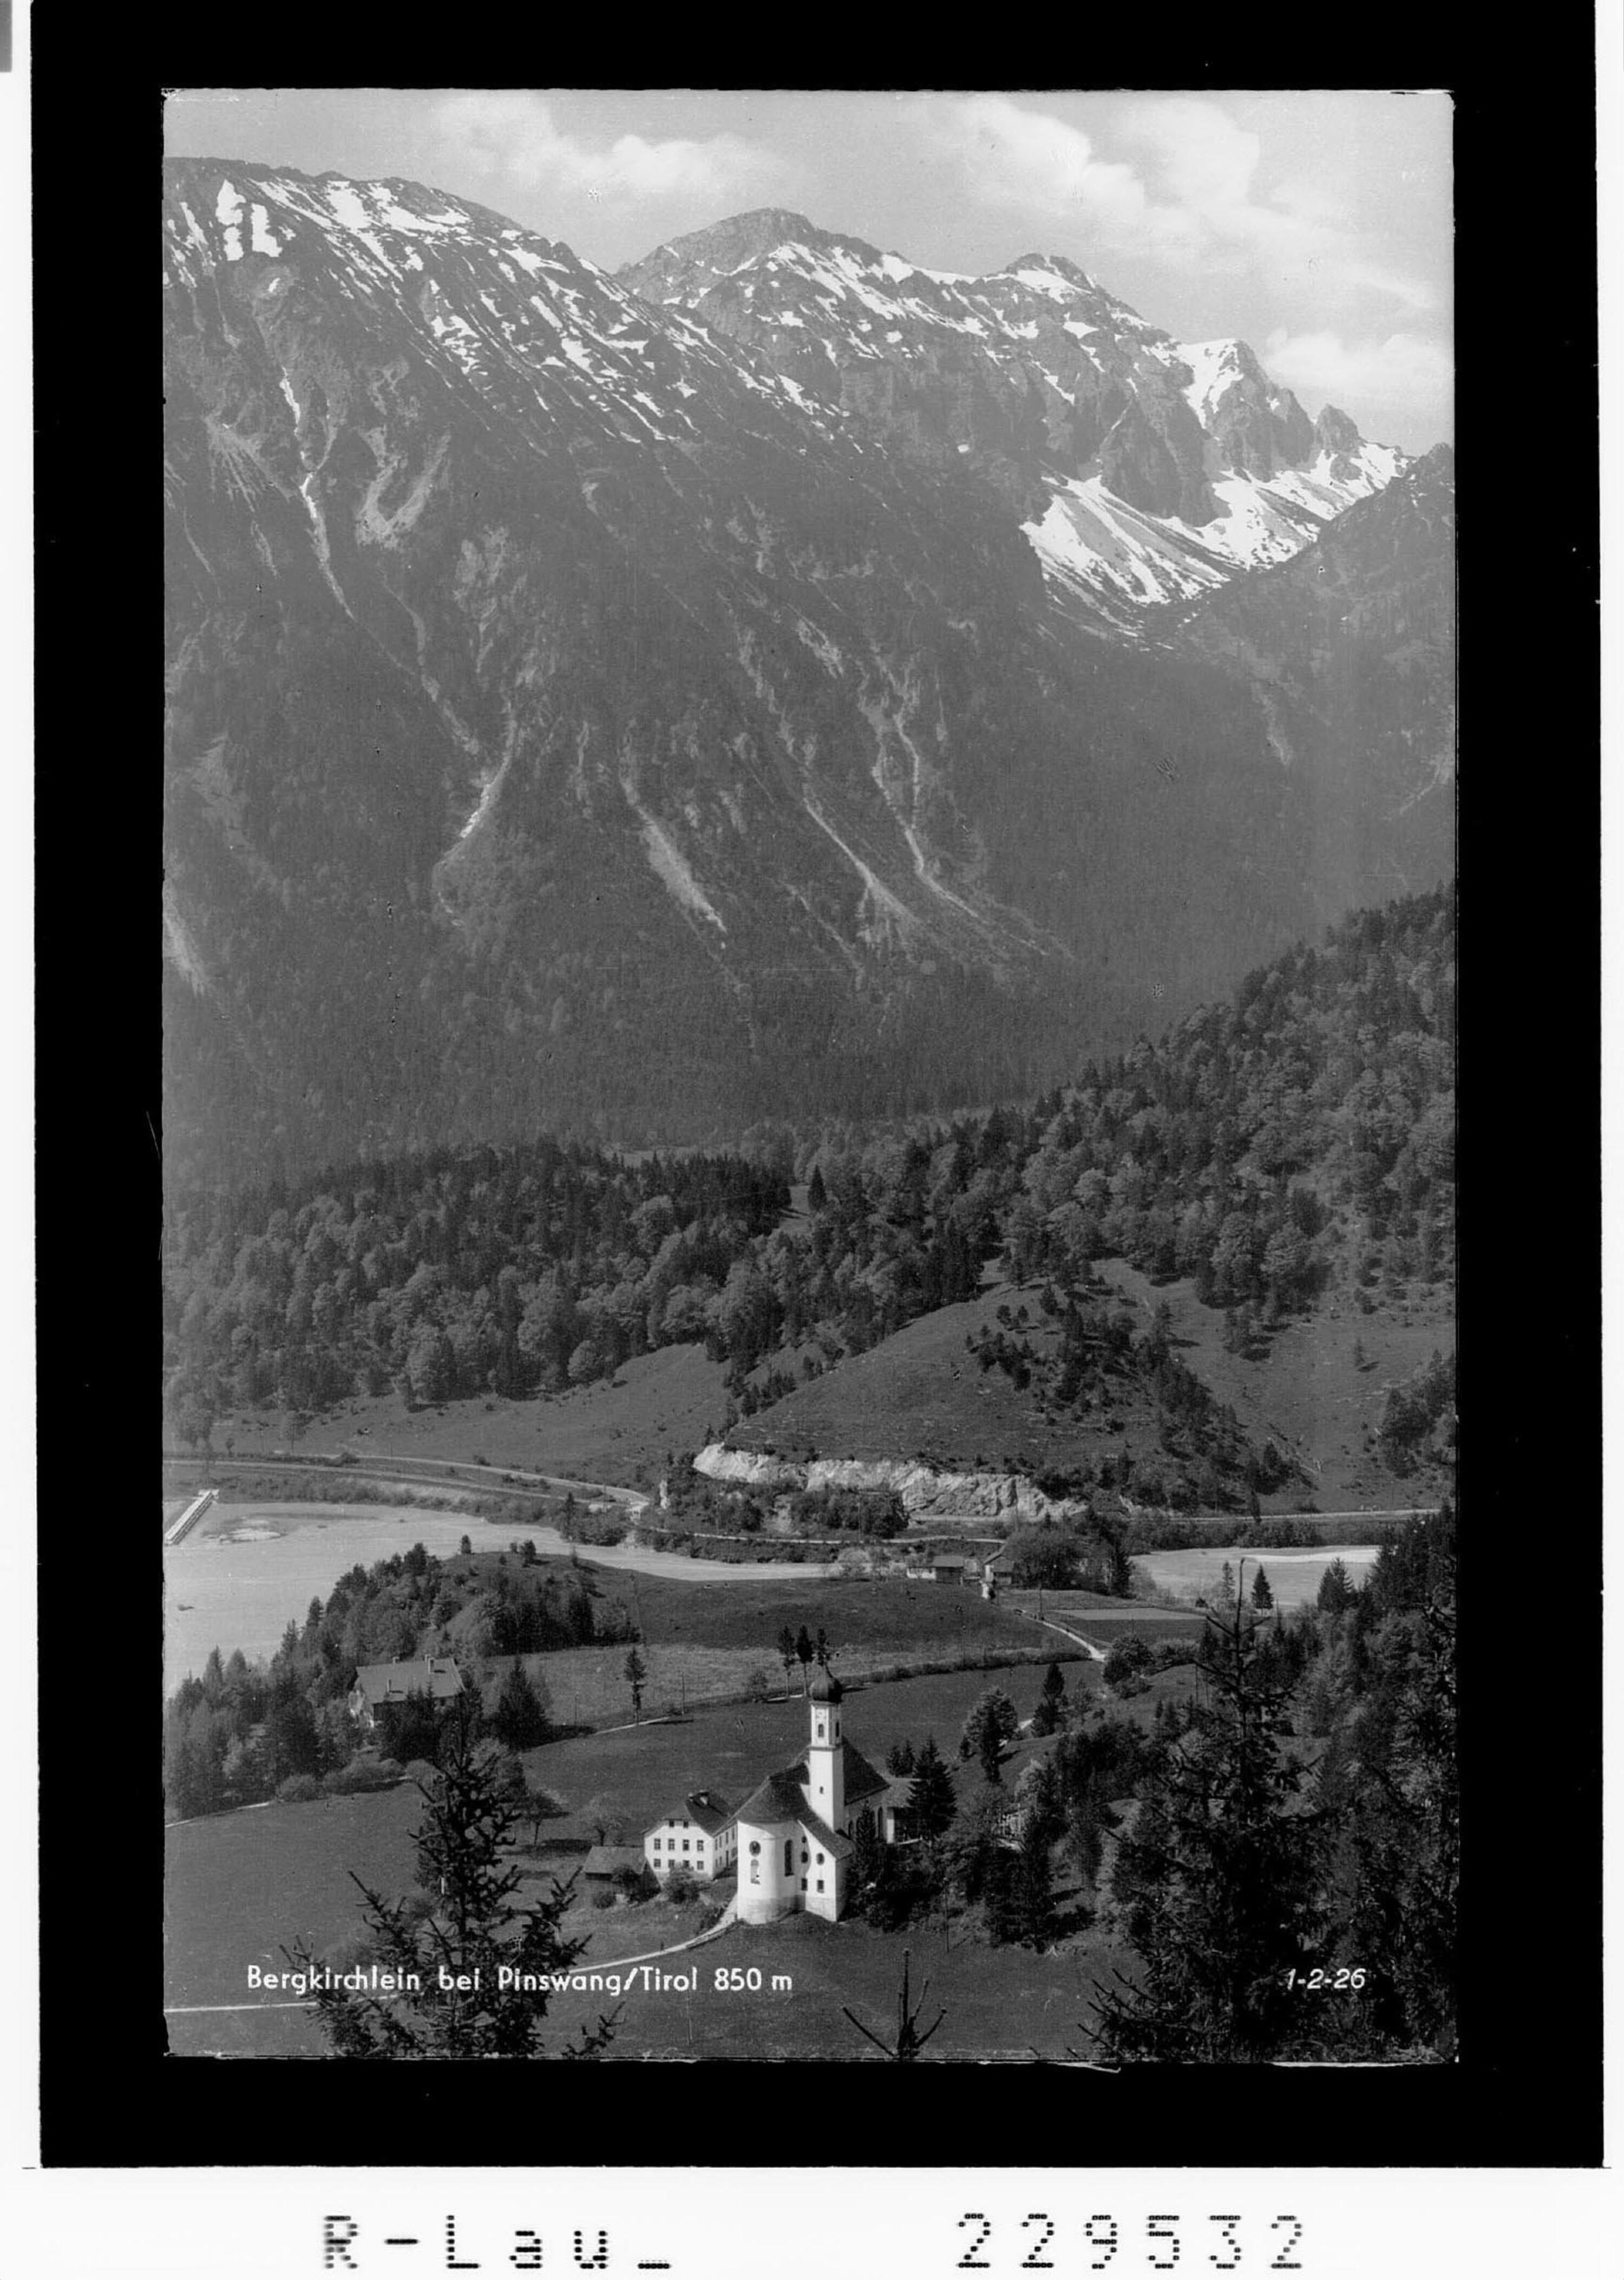 Bergkirchlein bei Pinswang / Tirol 850 m></div>


    <hr>
    <div class=